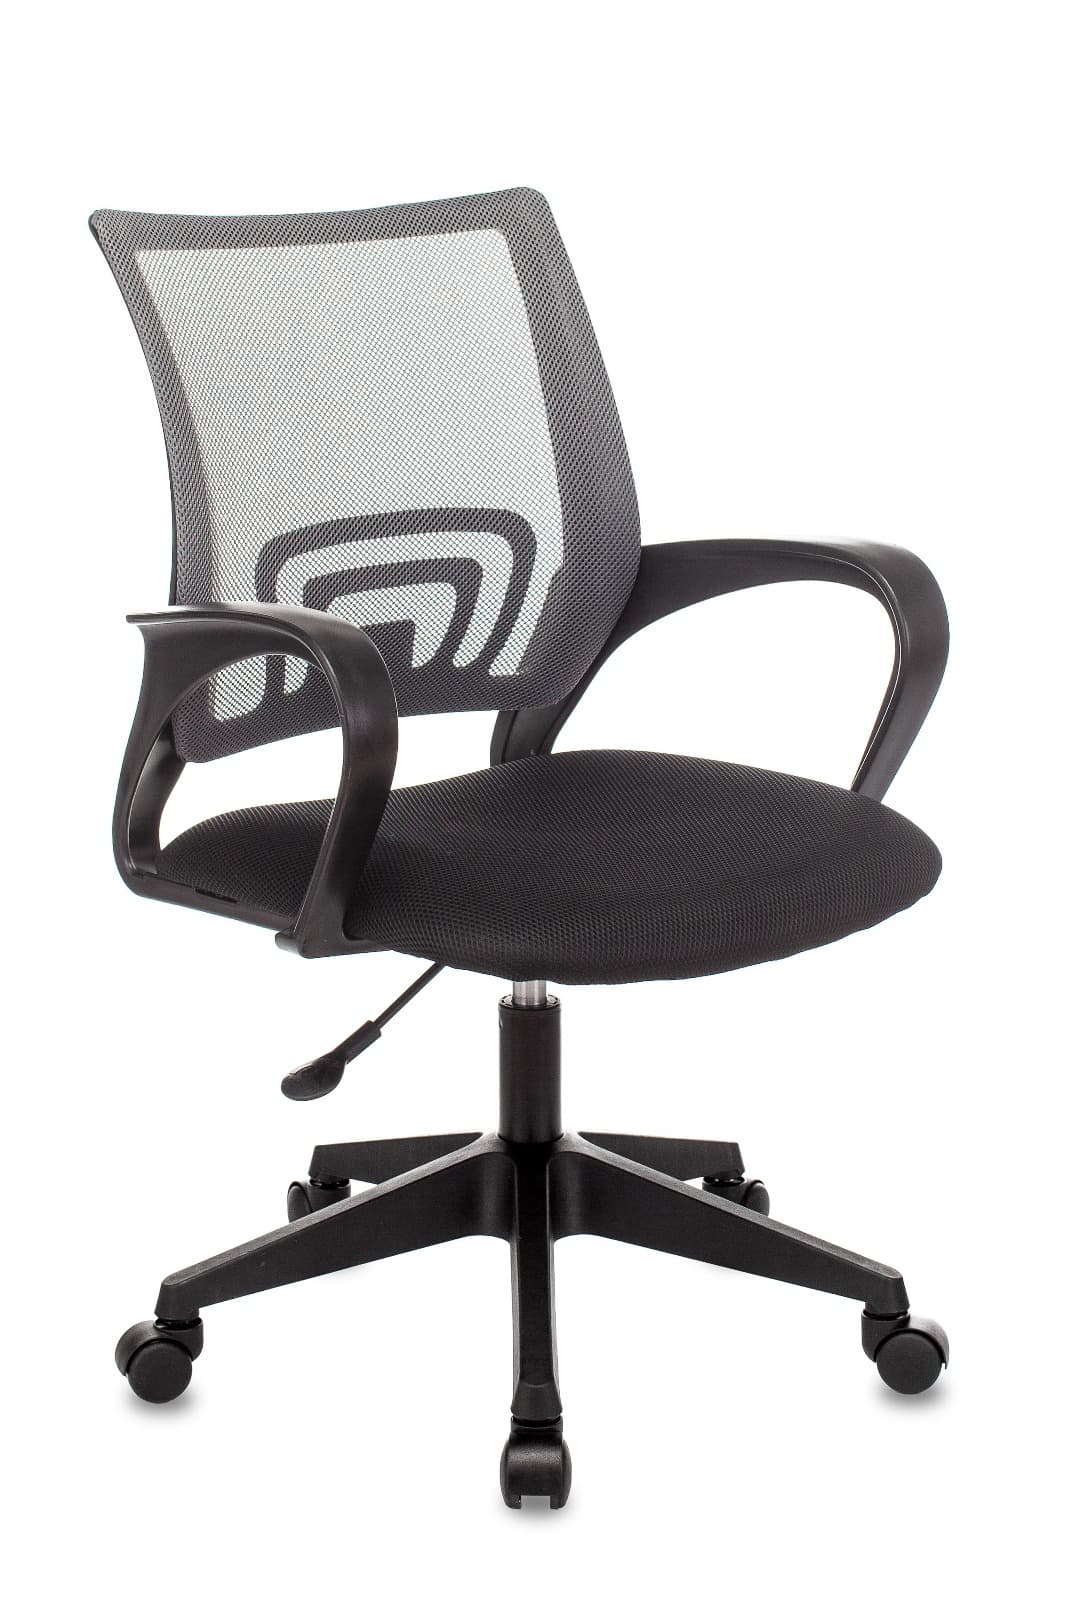 Компьютерное кресло ST-Basic офисное сетка/ткань темно-серый крестовина пластик механизм Пиастра